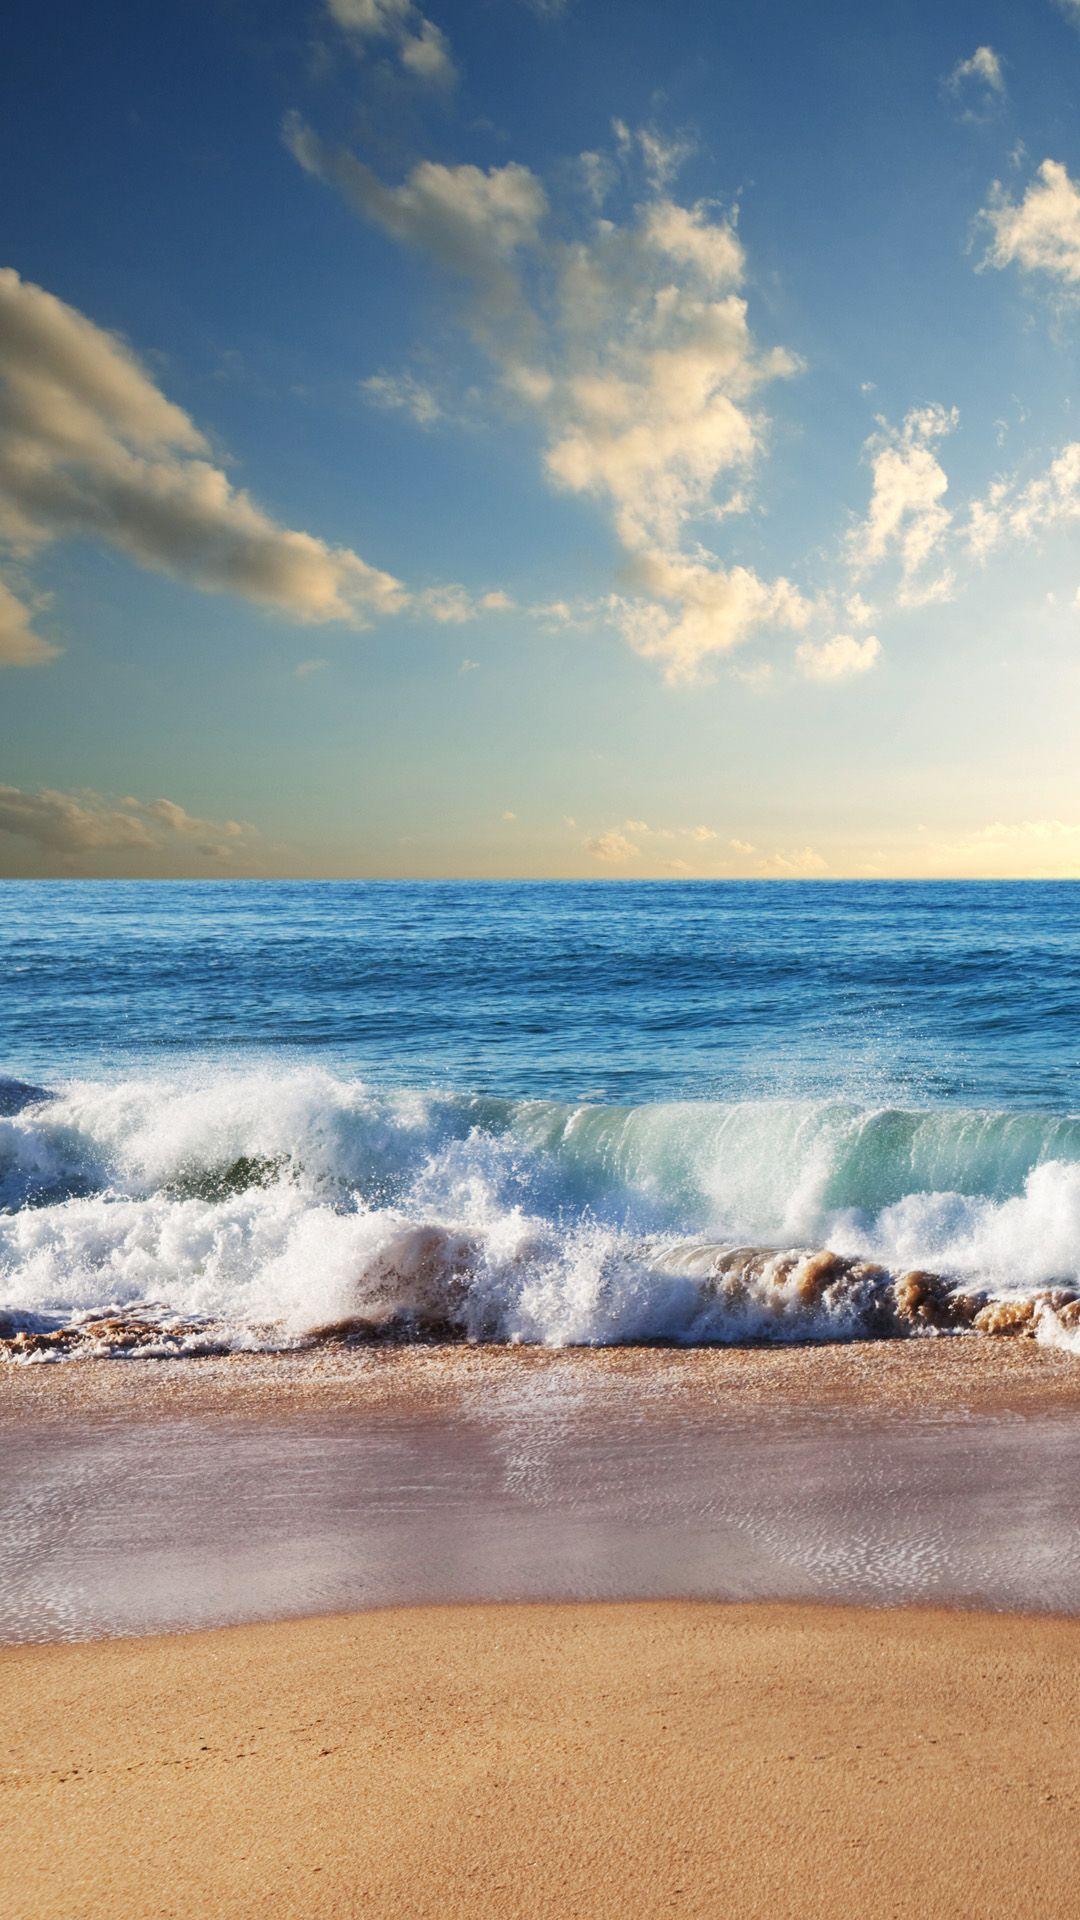 1080x1920 Beach Waves Hình Nền iPhone 6 Plus - Hình Nền Bãi Biển iPhone